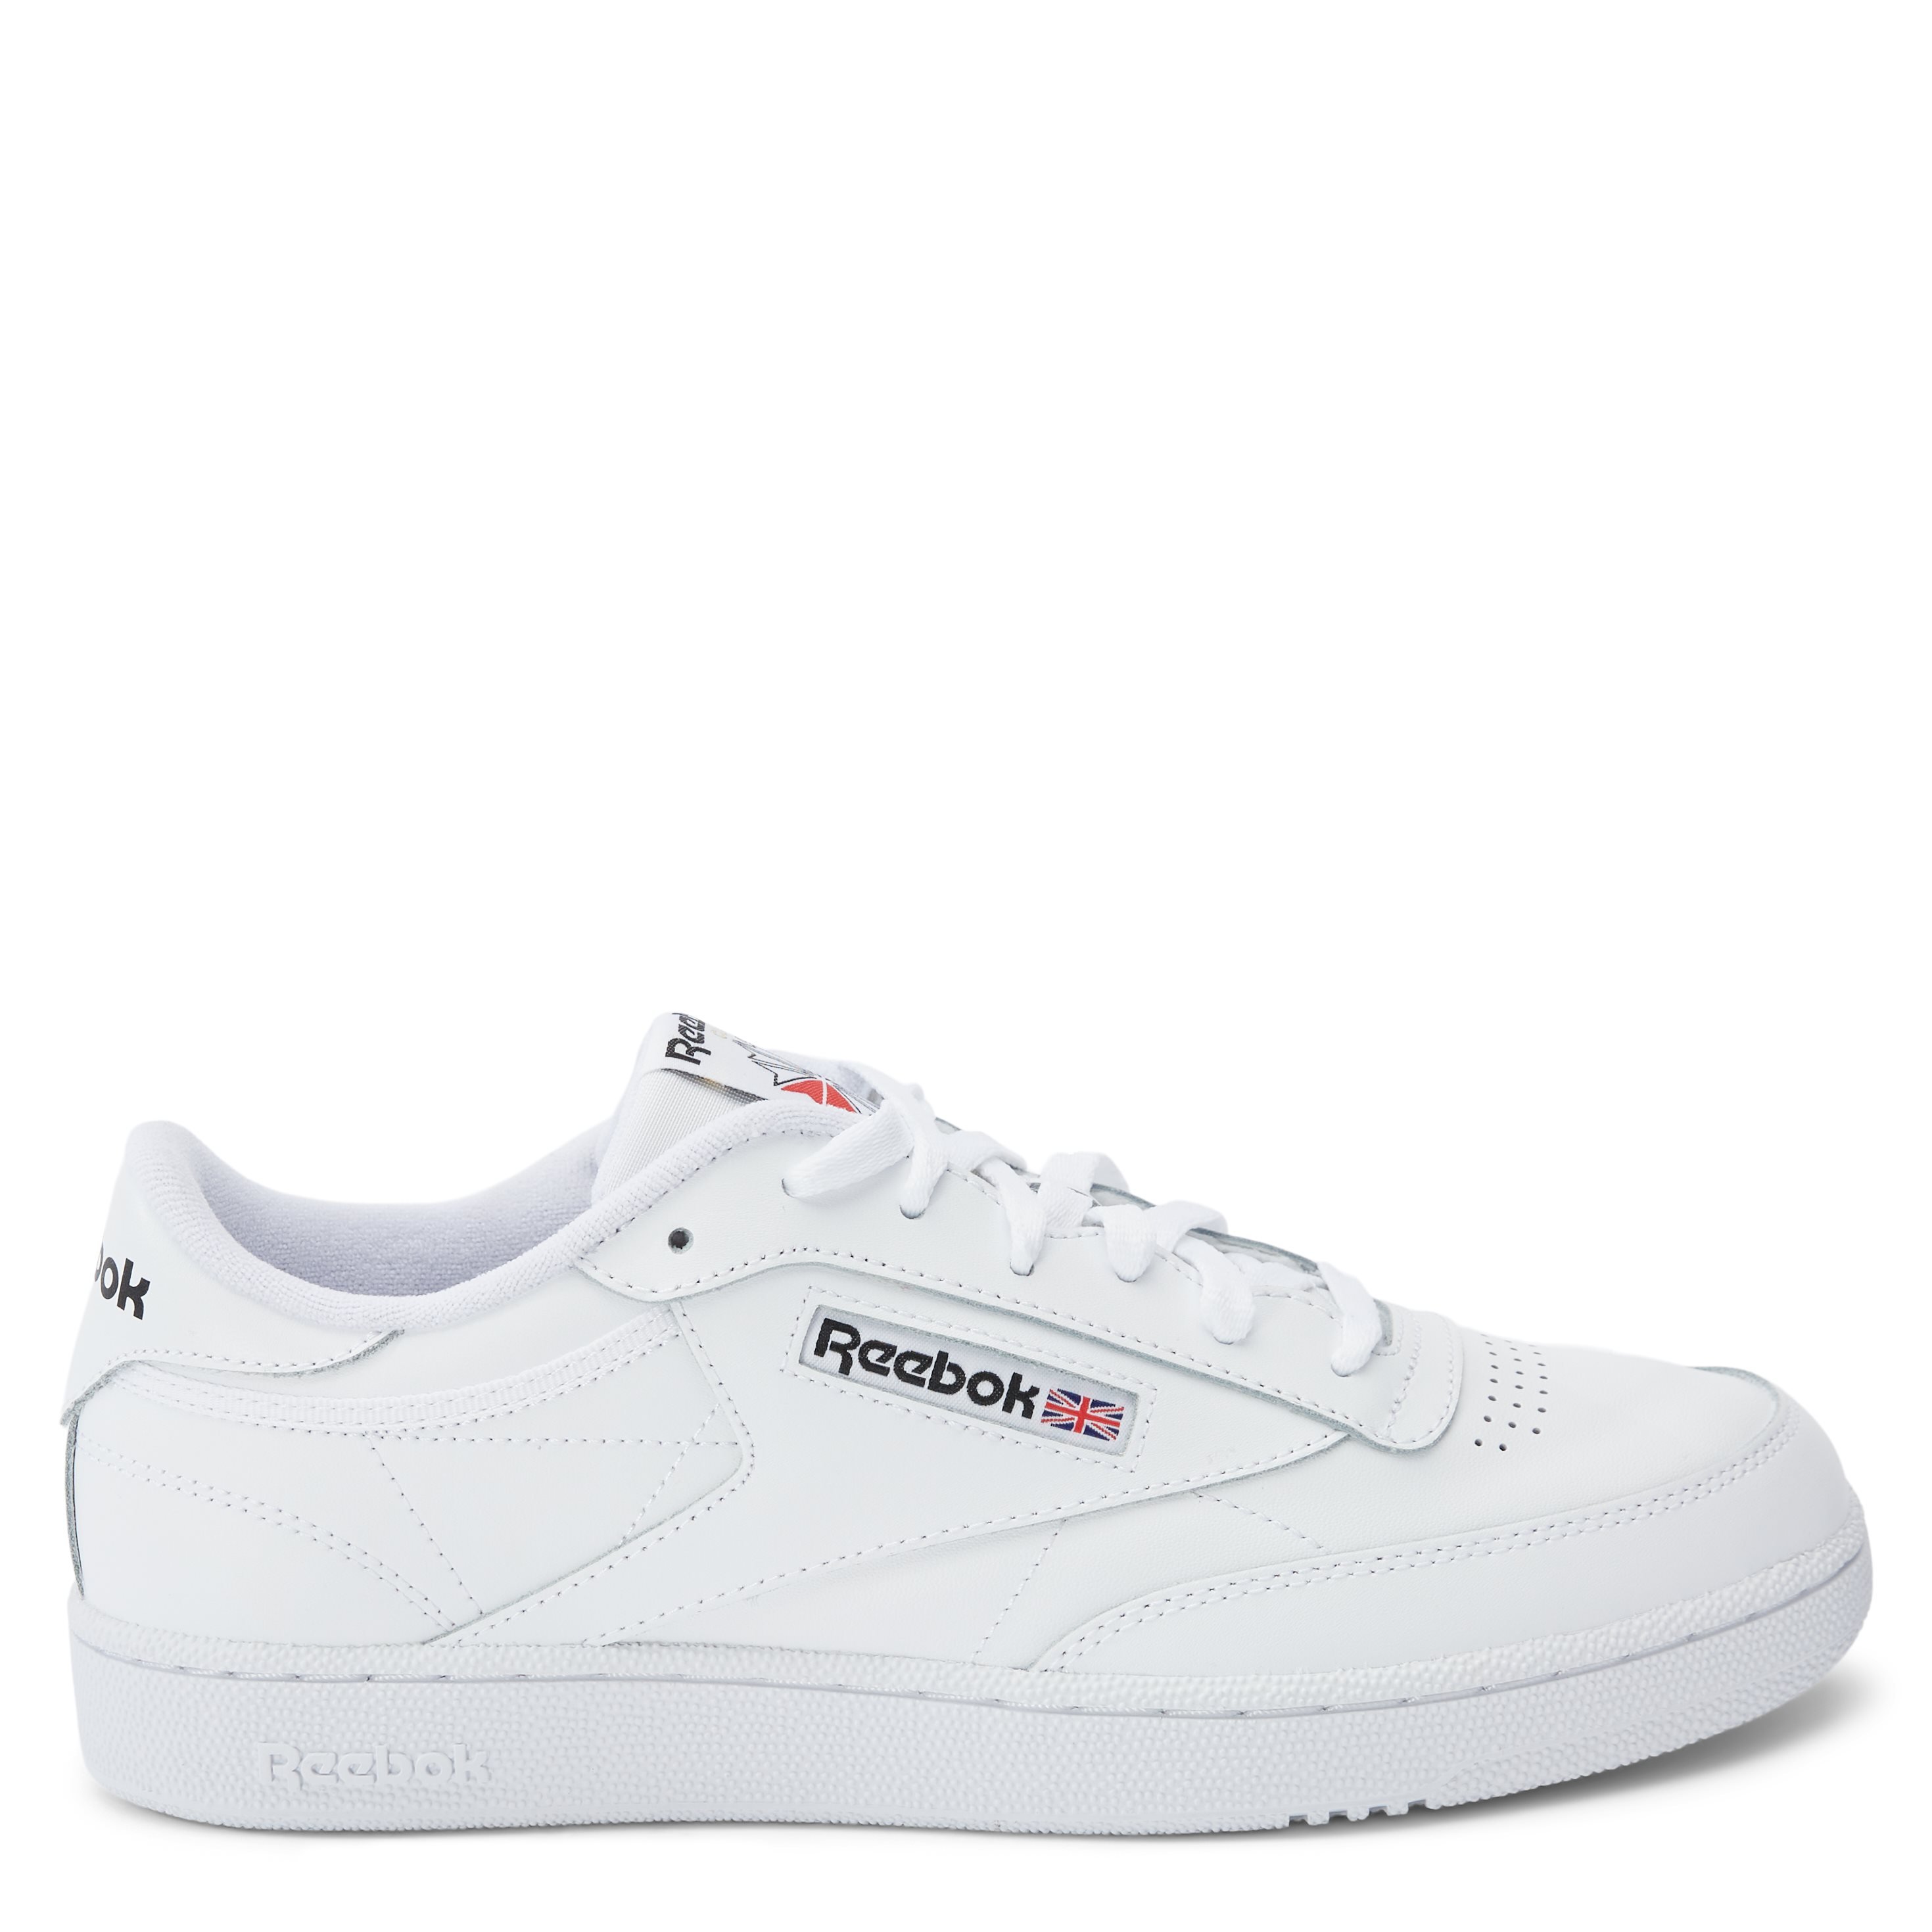 Club C 85 - Shoes - White